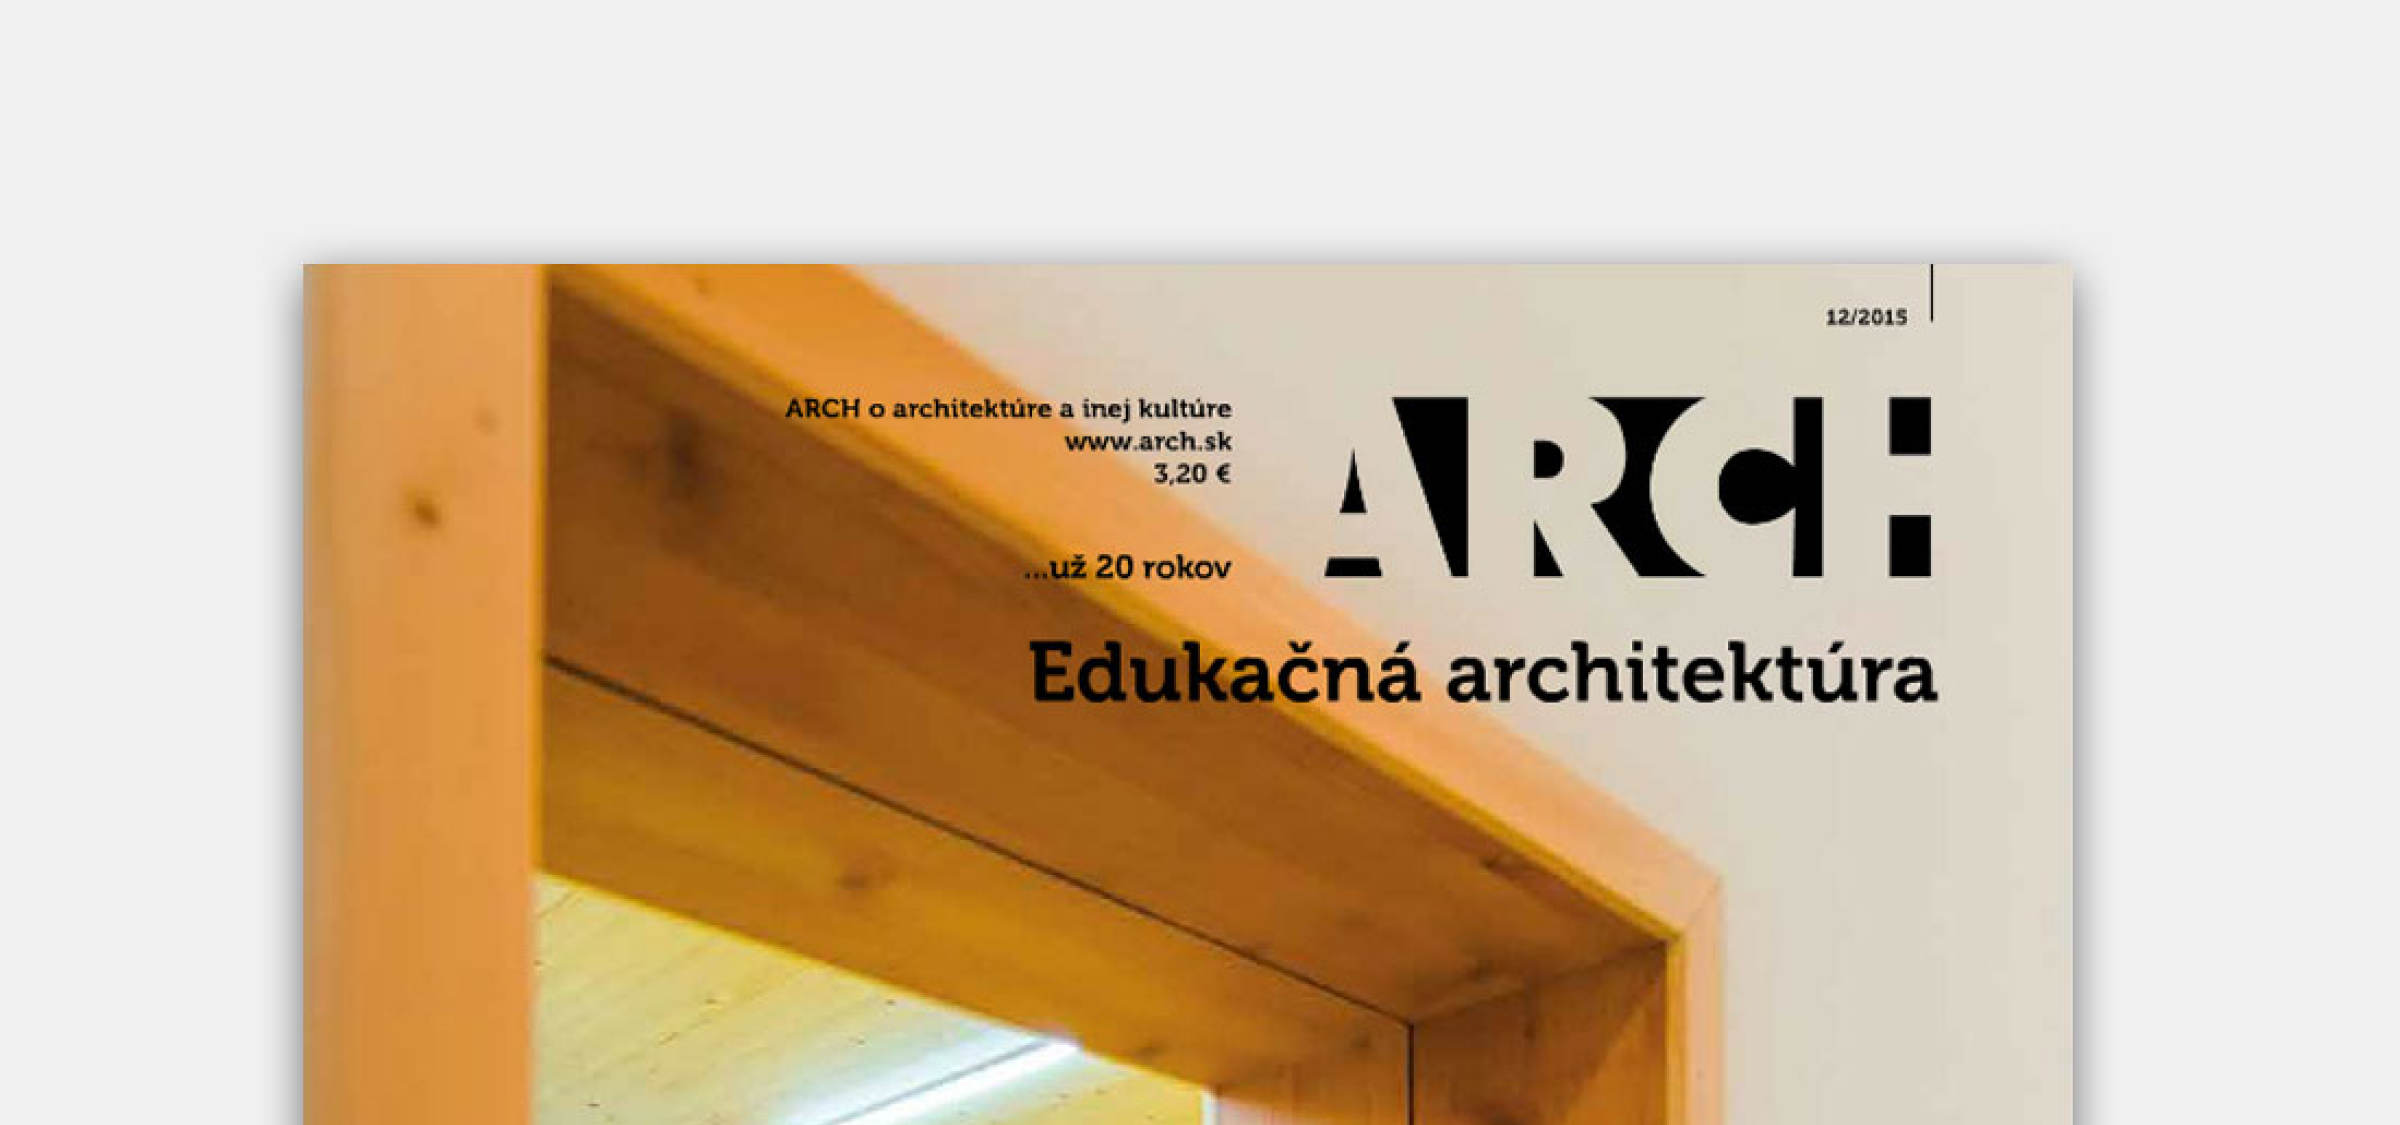 Projekt MORPH v nových ARCHoch | Aktuálne | Atrium Architekti